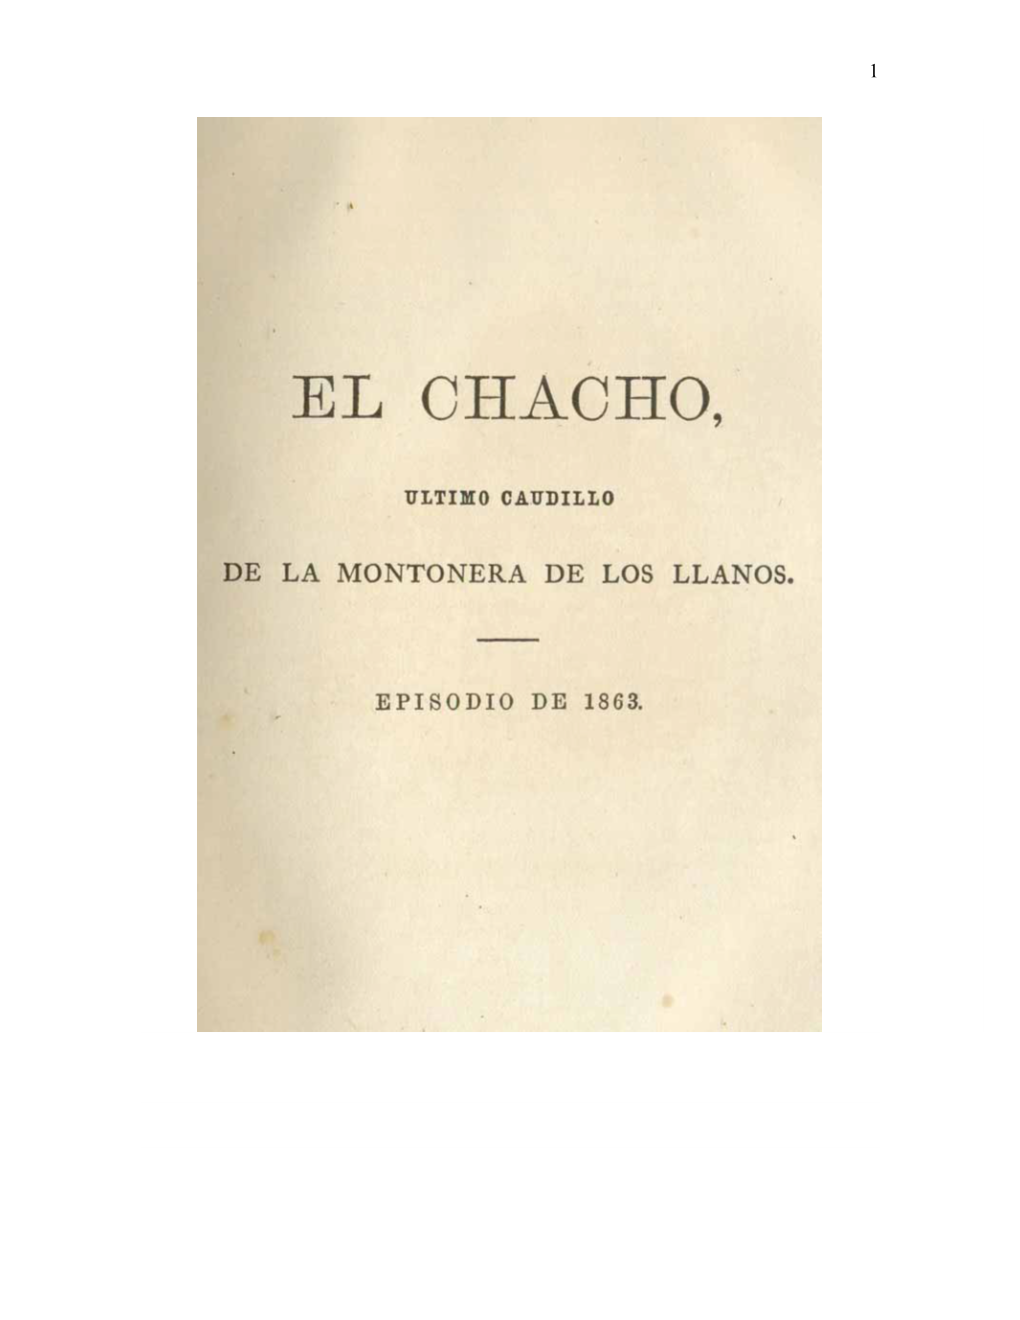 El Chacho, Último Caudillo De La Montonera De Los Llanos (1868)